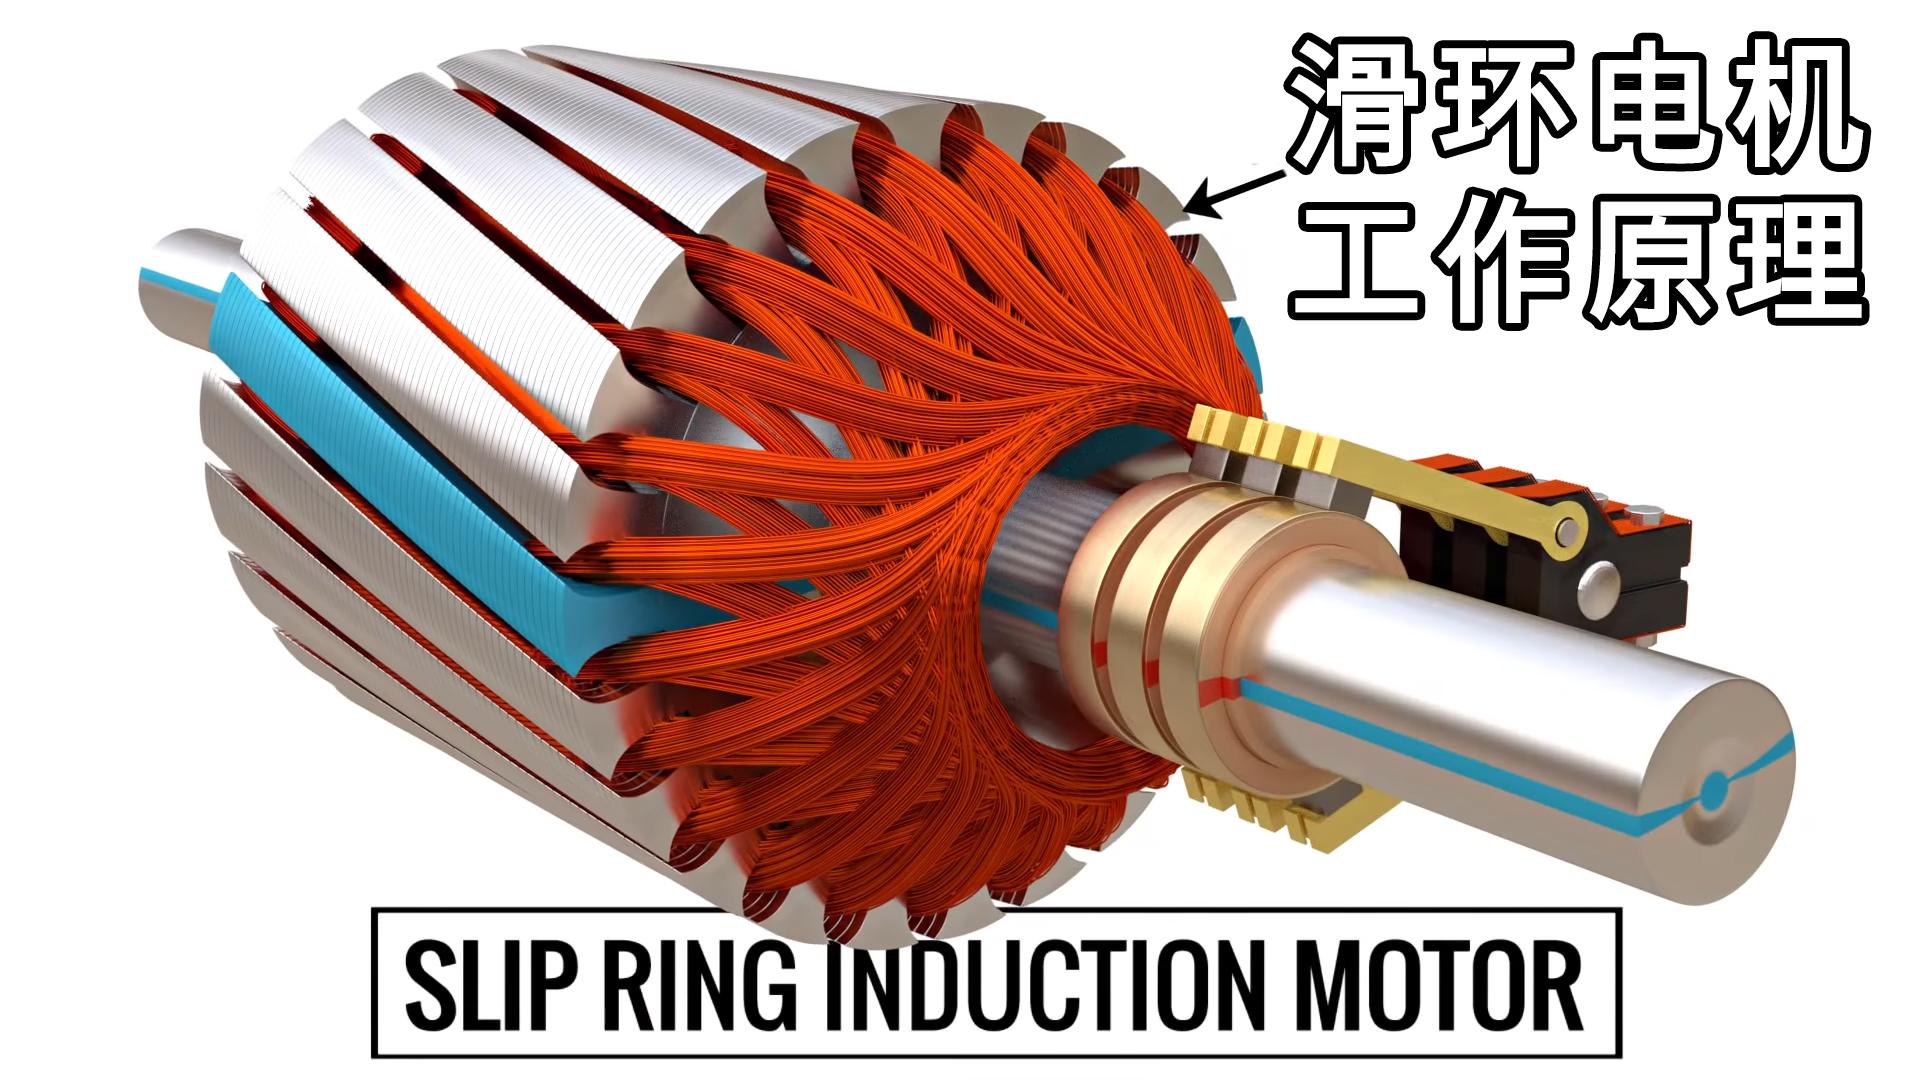 滑环电机是如何工作的?滑环式感应电机工作原理